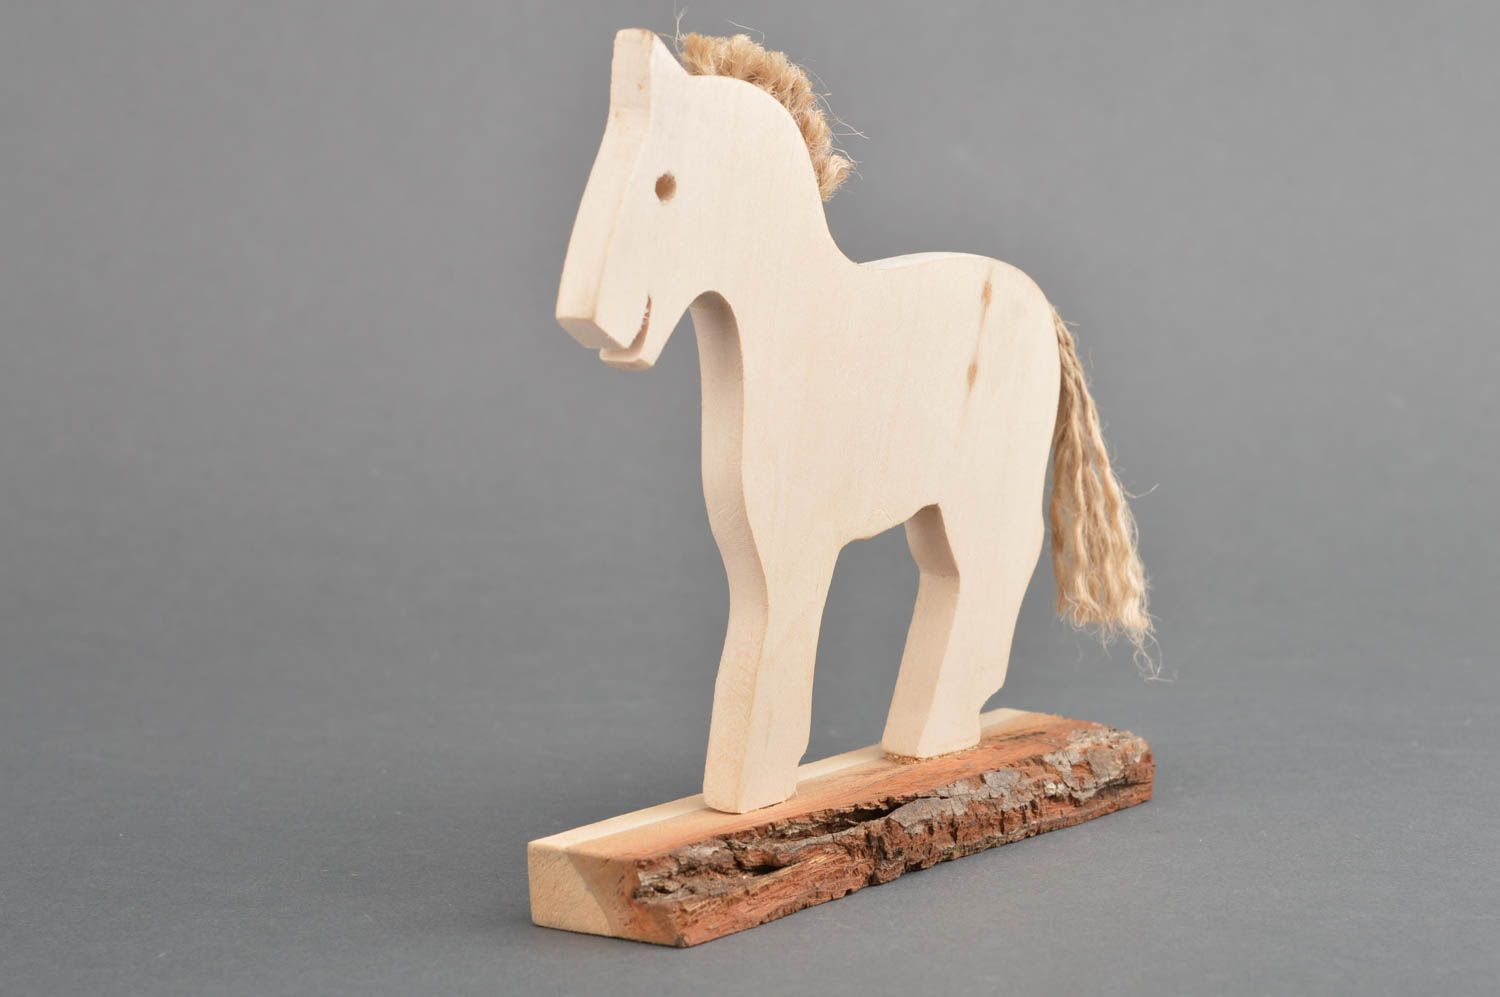 Juguete de madera hecho a mano para niños o para decoración de interior caballo foto 3